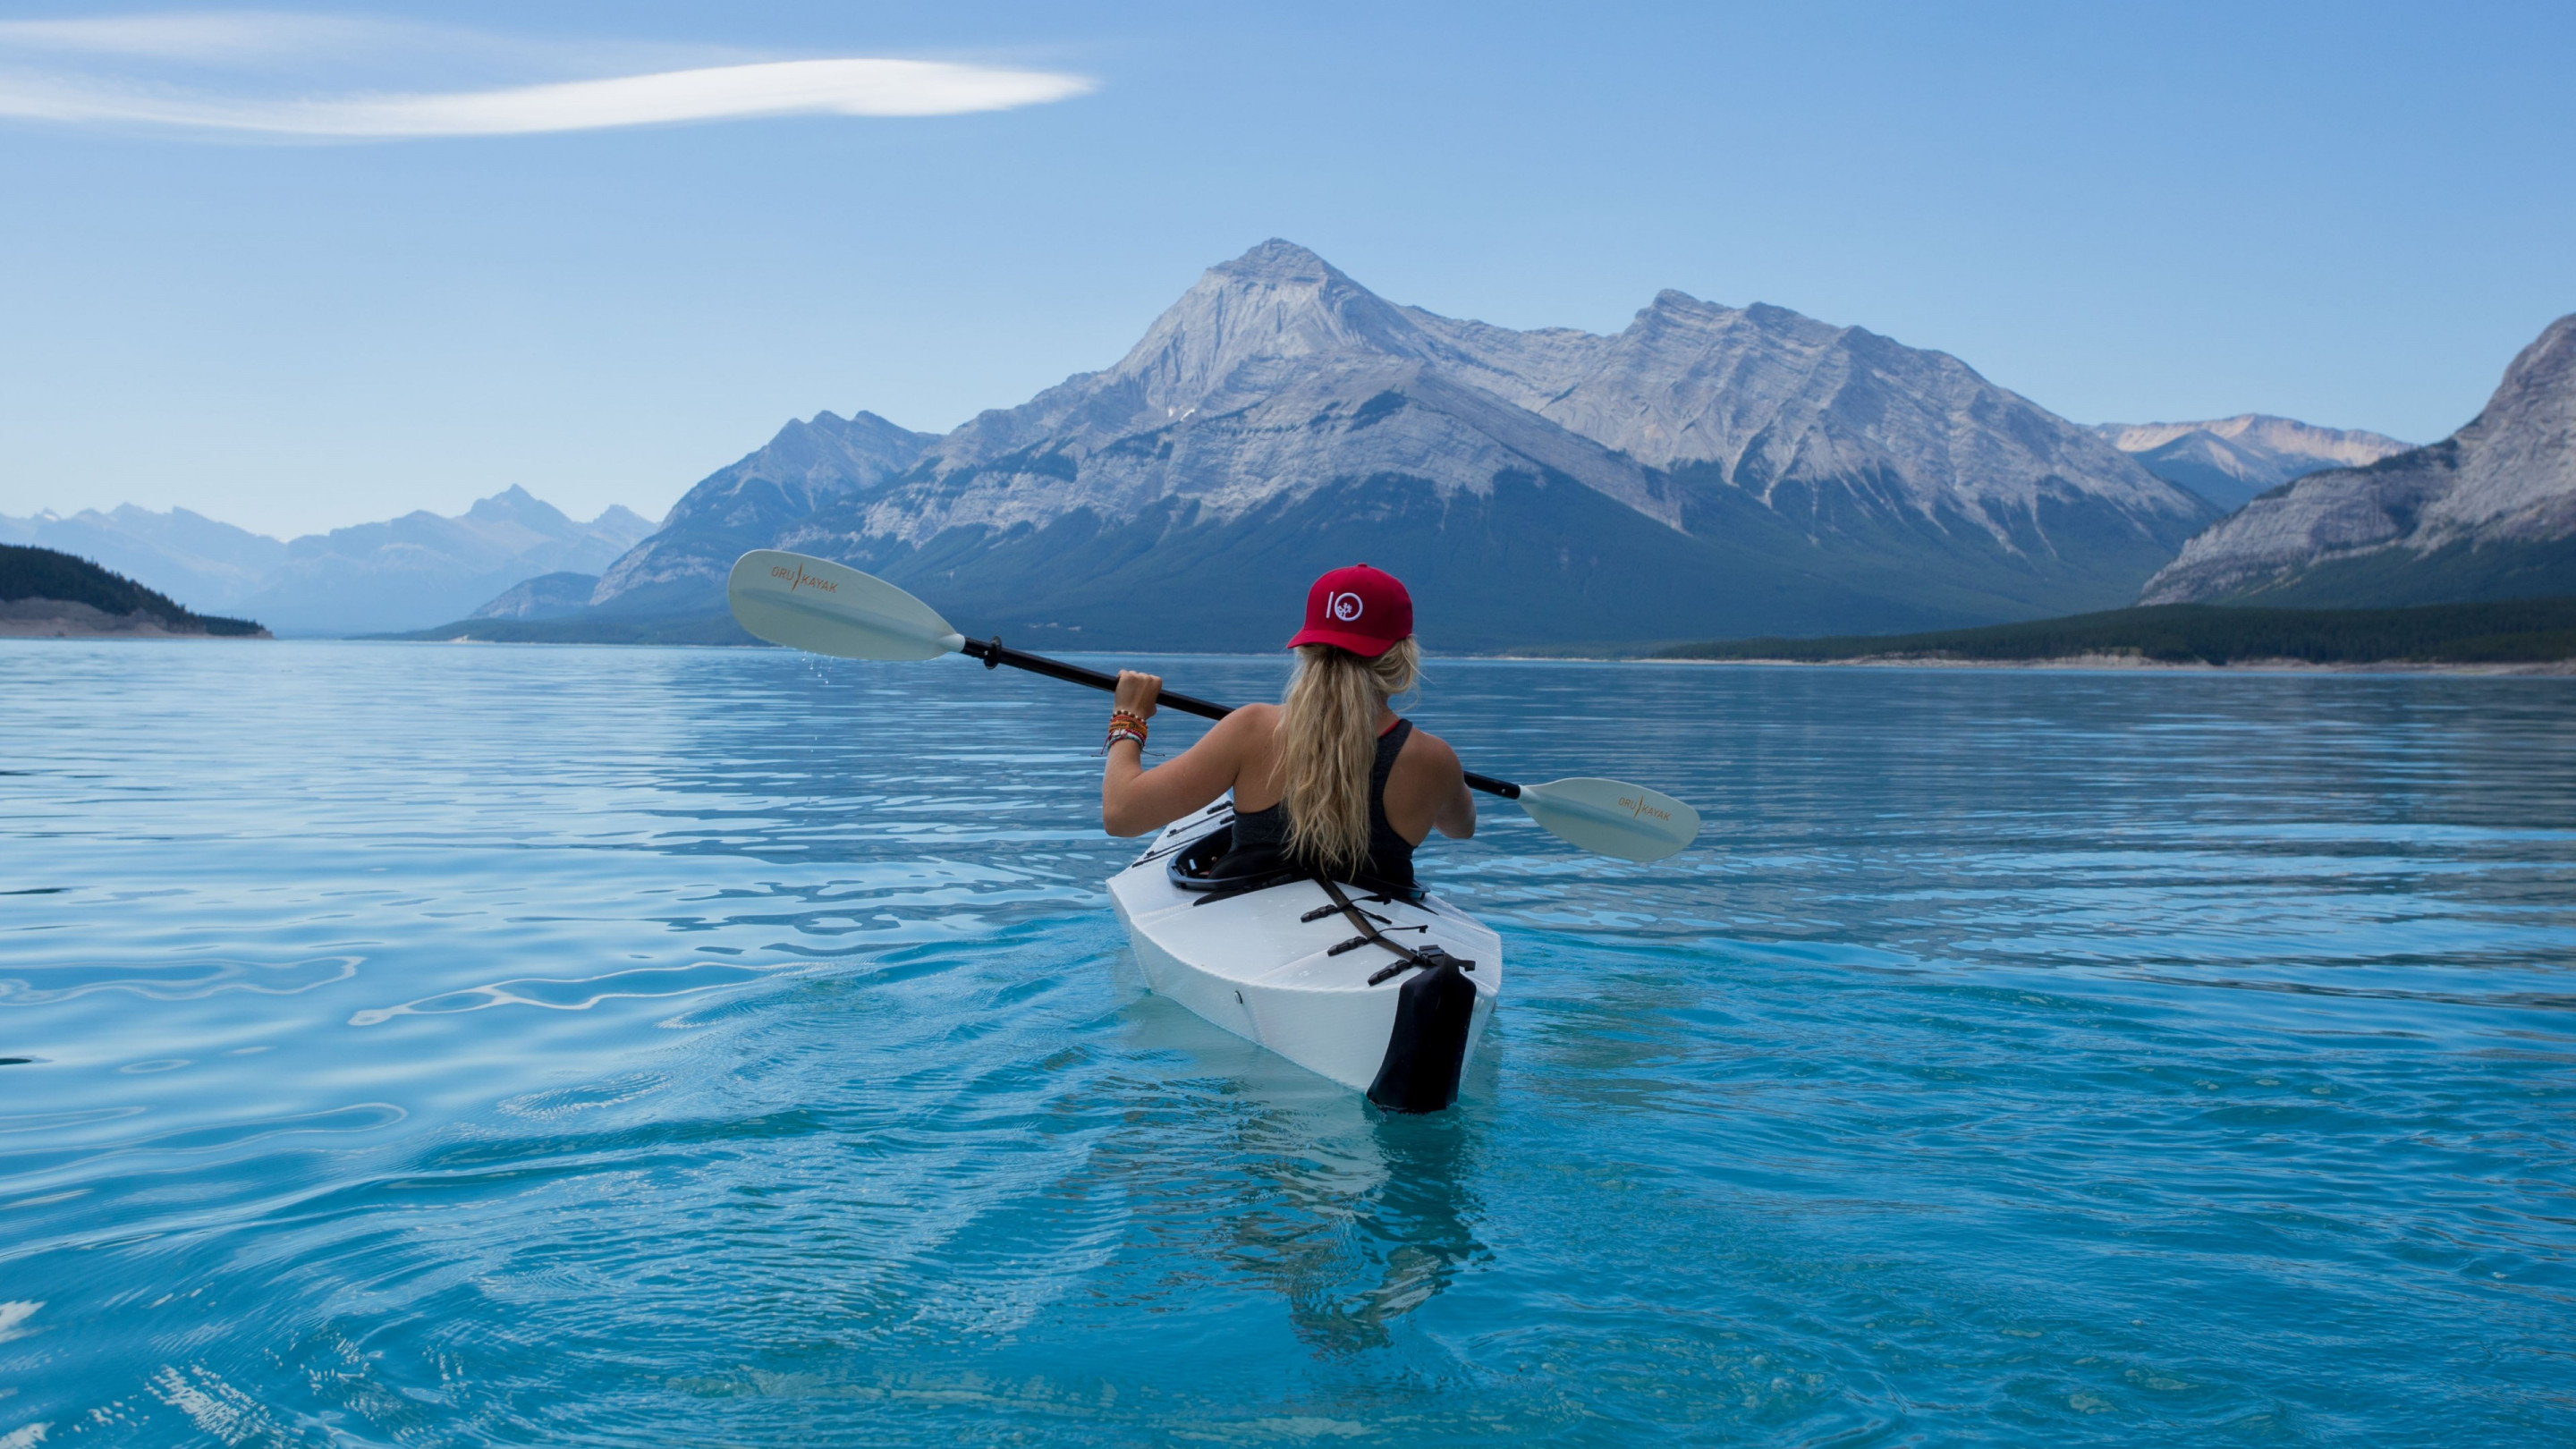 Trip with kayak on lake wallpaper 2880x1620